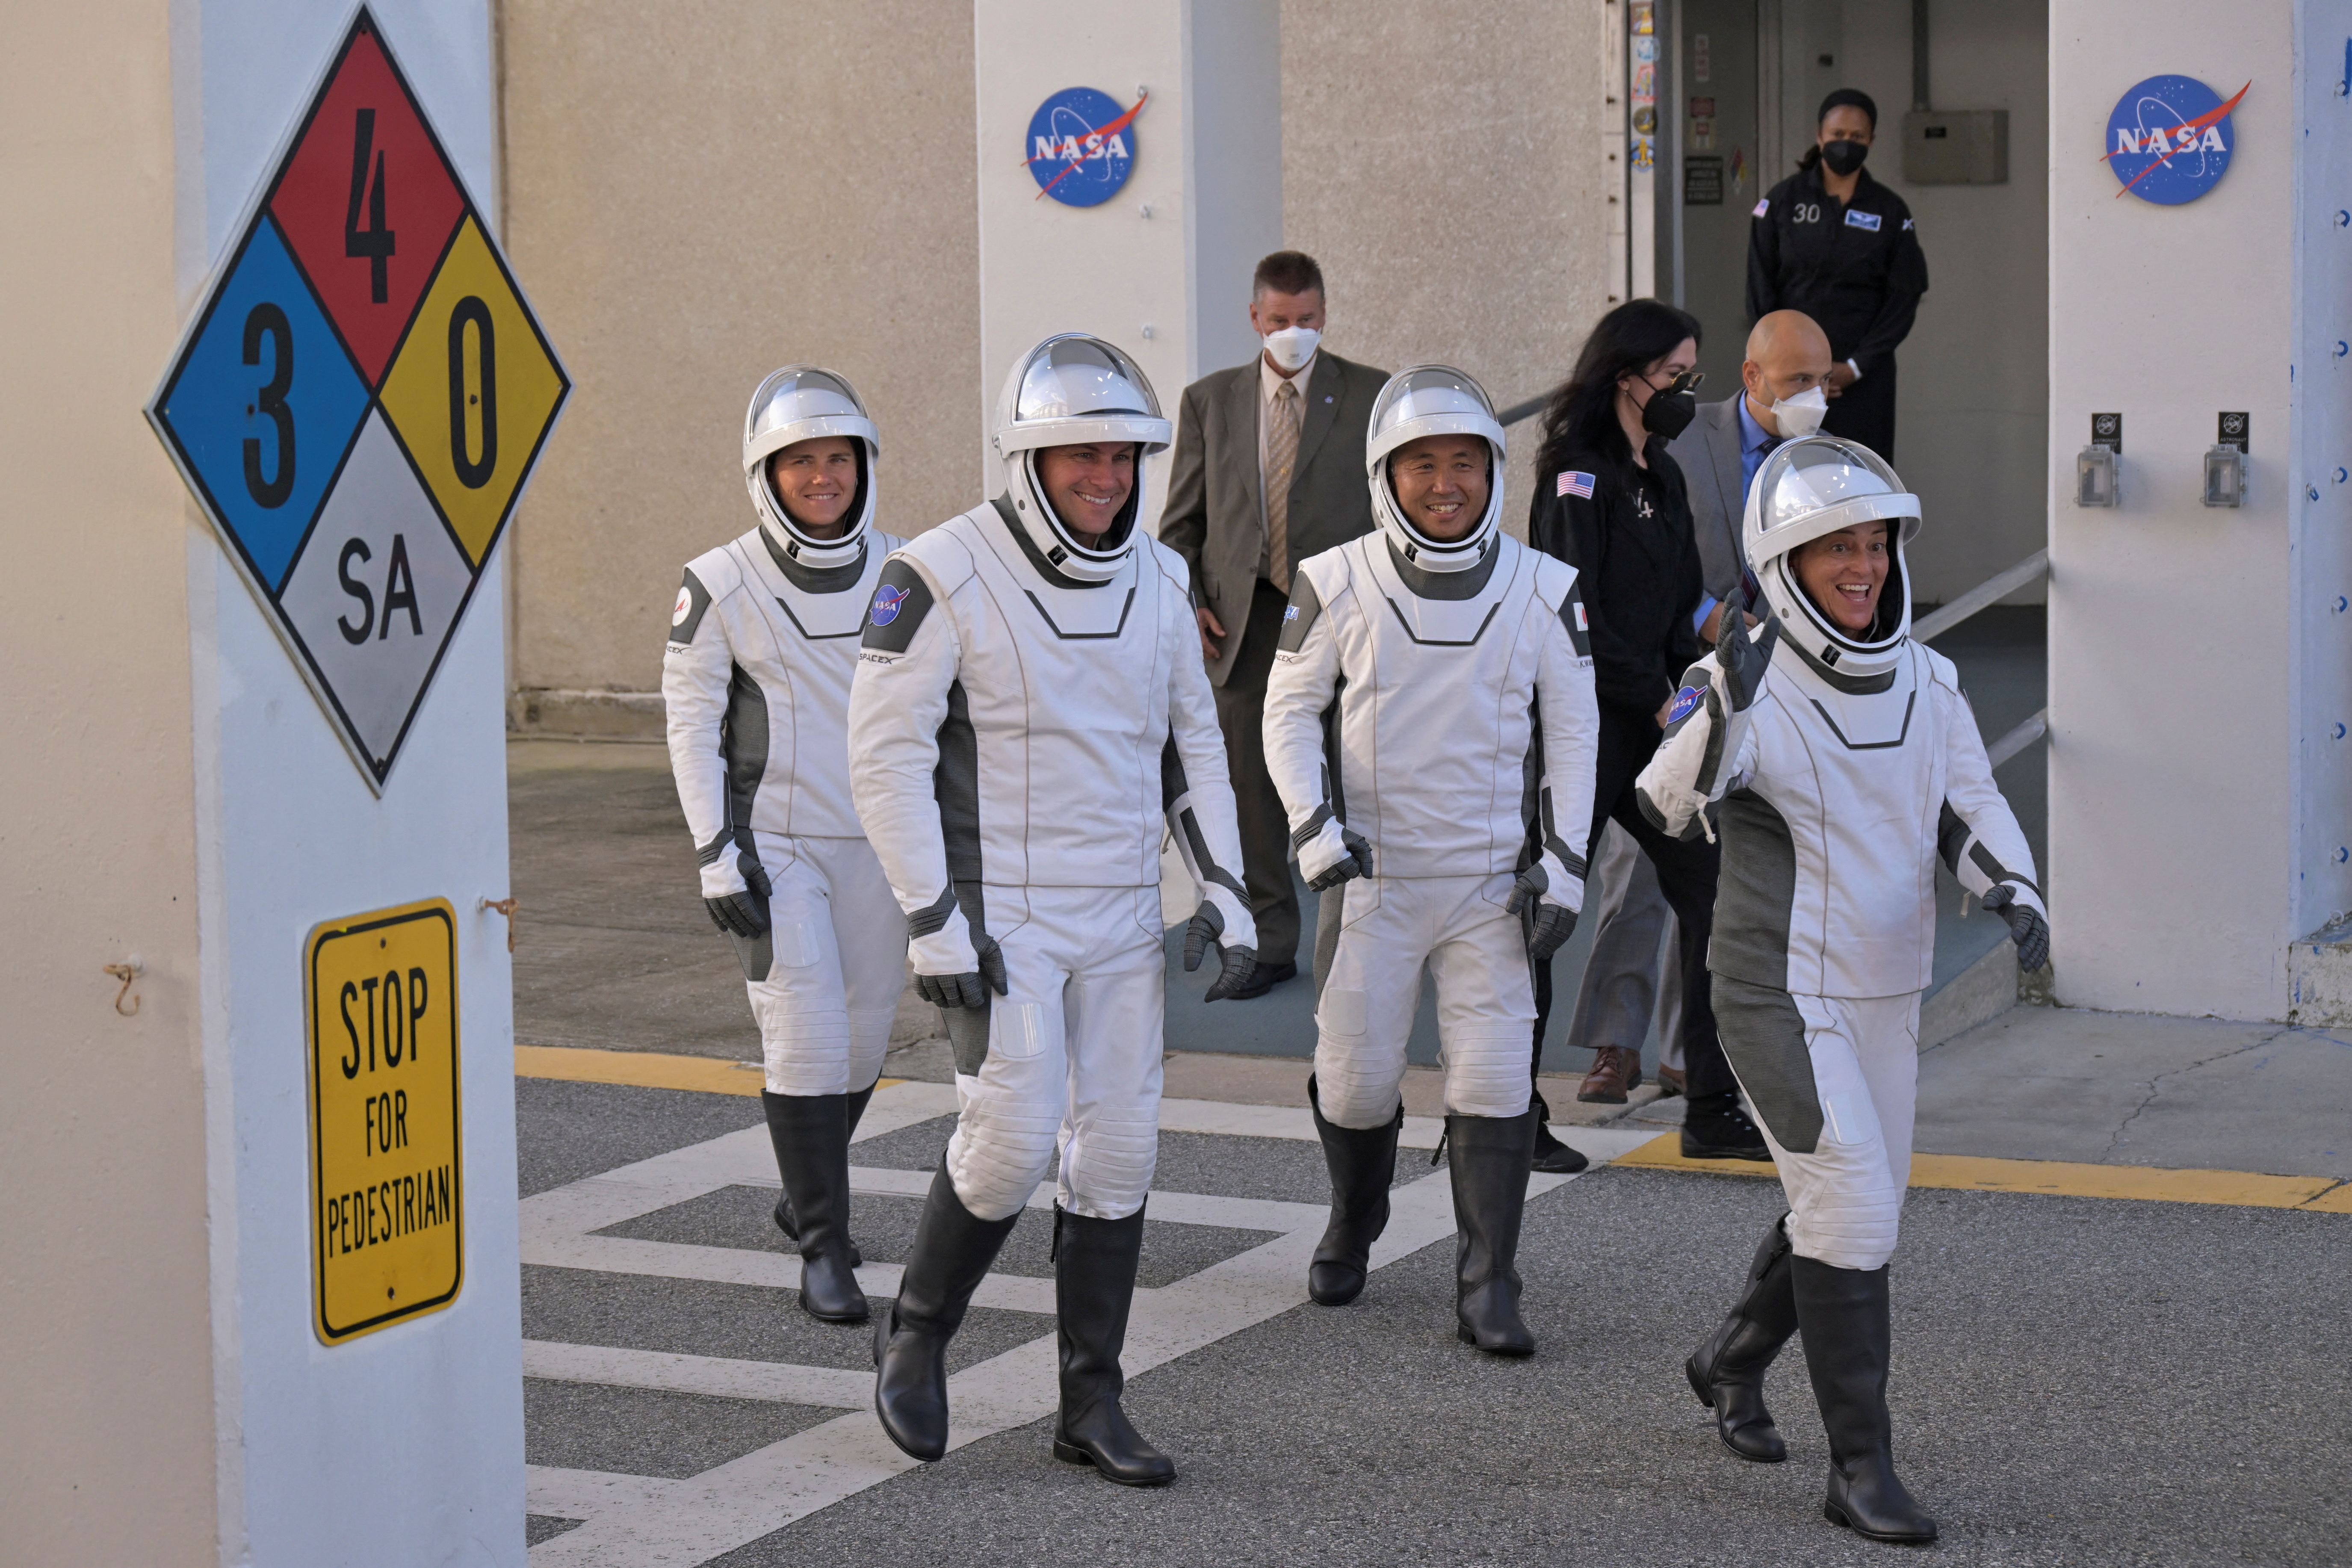 Pet članov NASA-ine posadke odide iz svojih prostorov za izstrelitev rakete SpaceX Falcon 9 v vesoljskem centru Kennedy